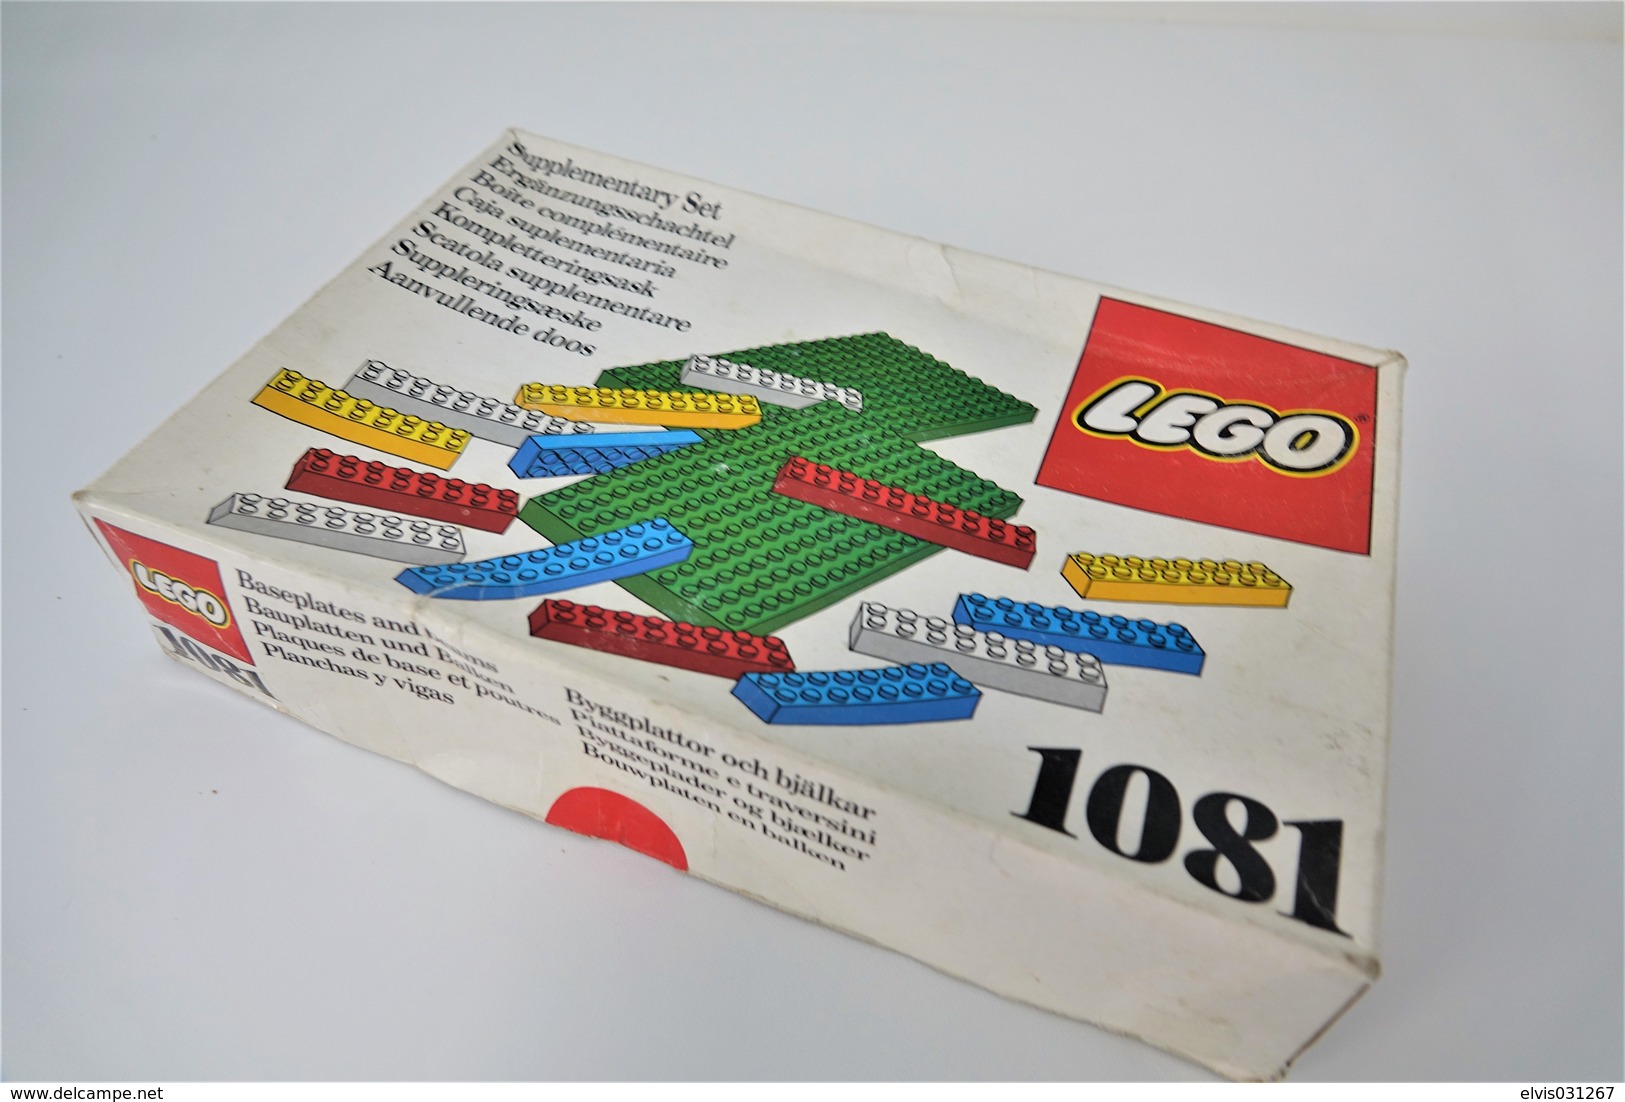 LEGO - 1081 Supplementary Box - Very Rare - Original Box - Original Lego 1976 - Vintage - Catalogi